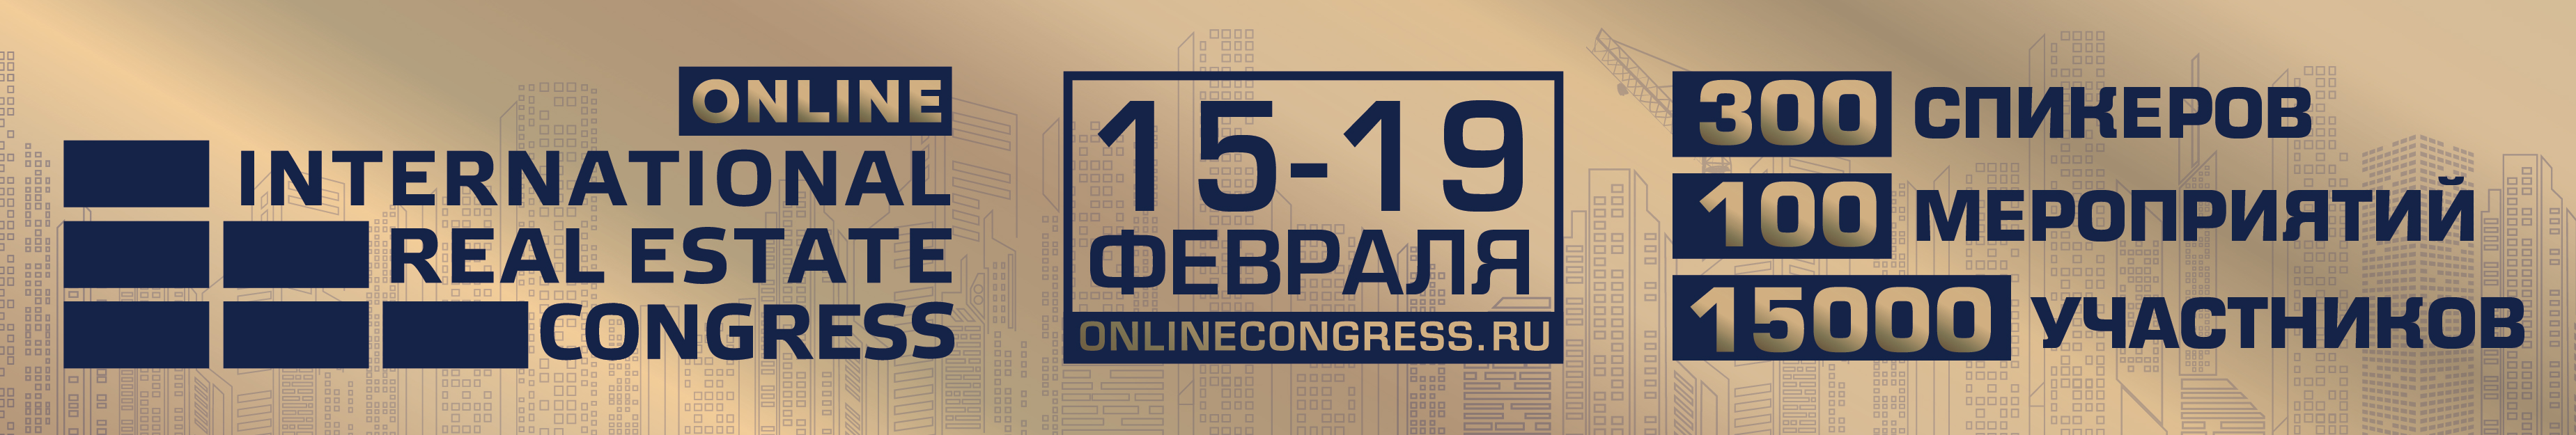 Международный жилищный конгресс online пройдет 15-19 февраля